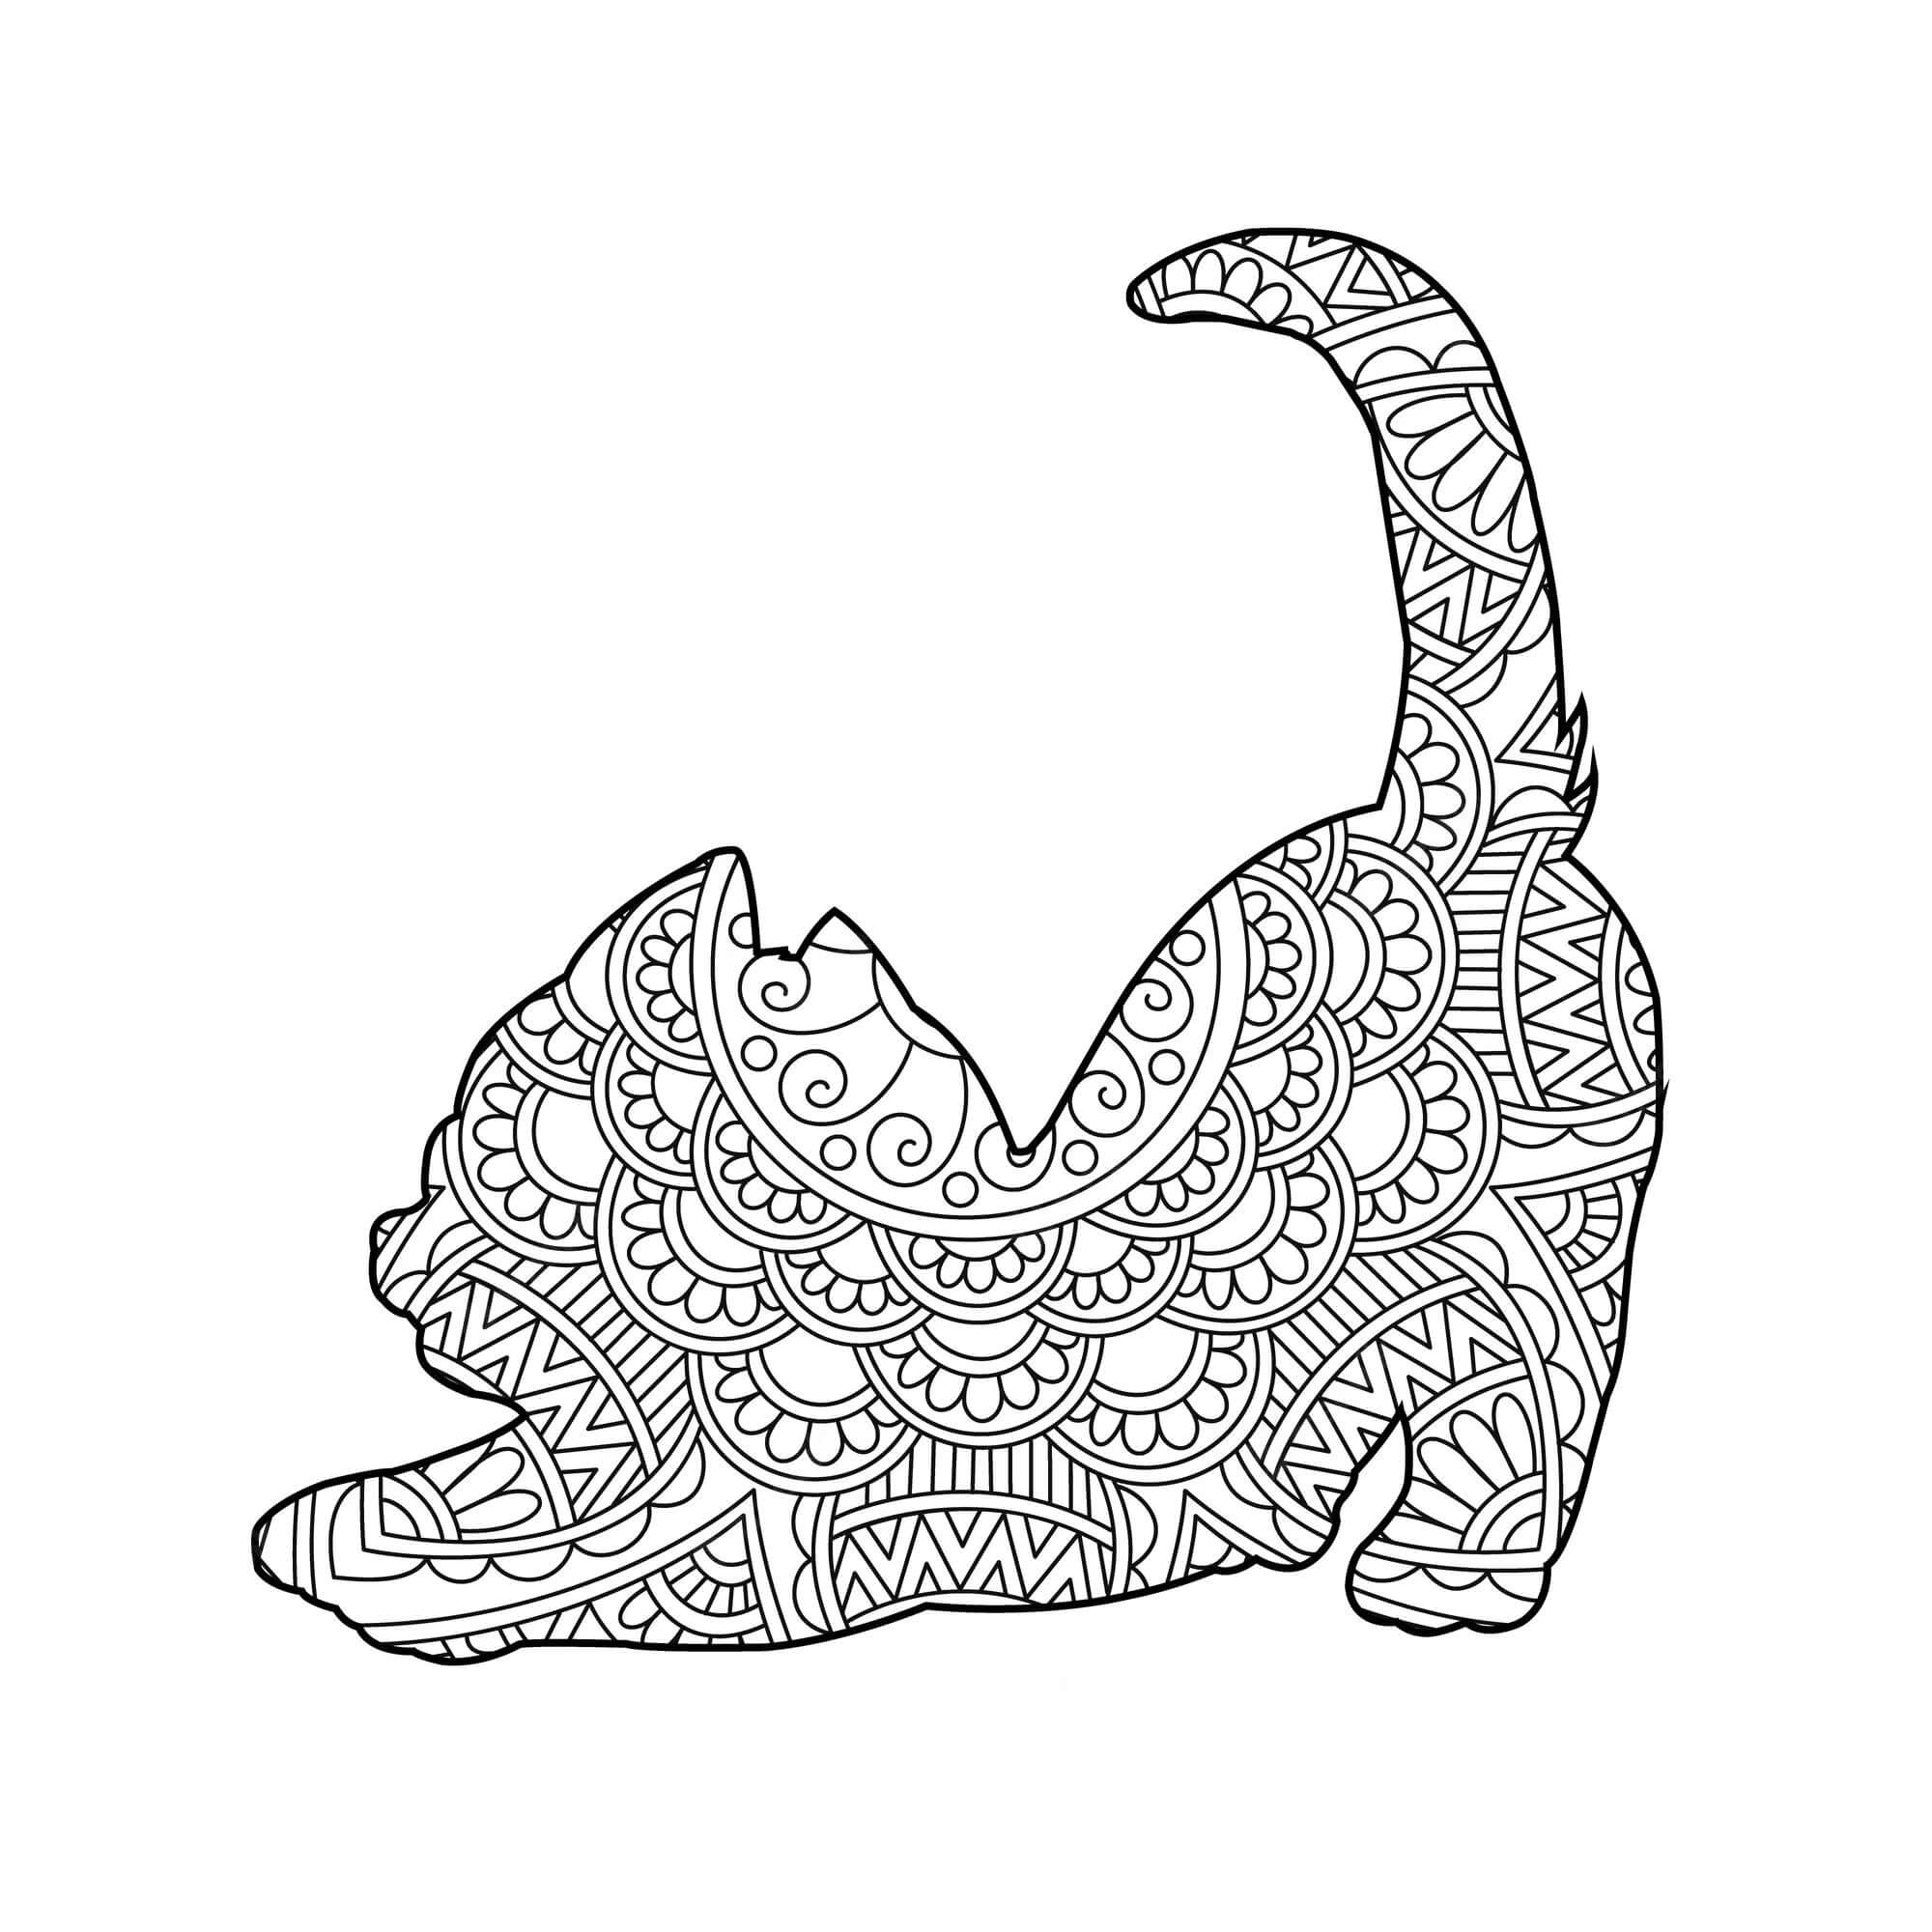 Mandala Cat Coloring Page – Sheet 16 Mandalas